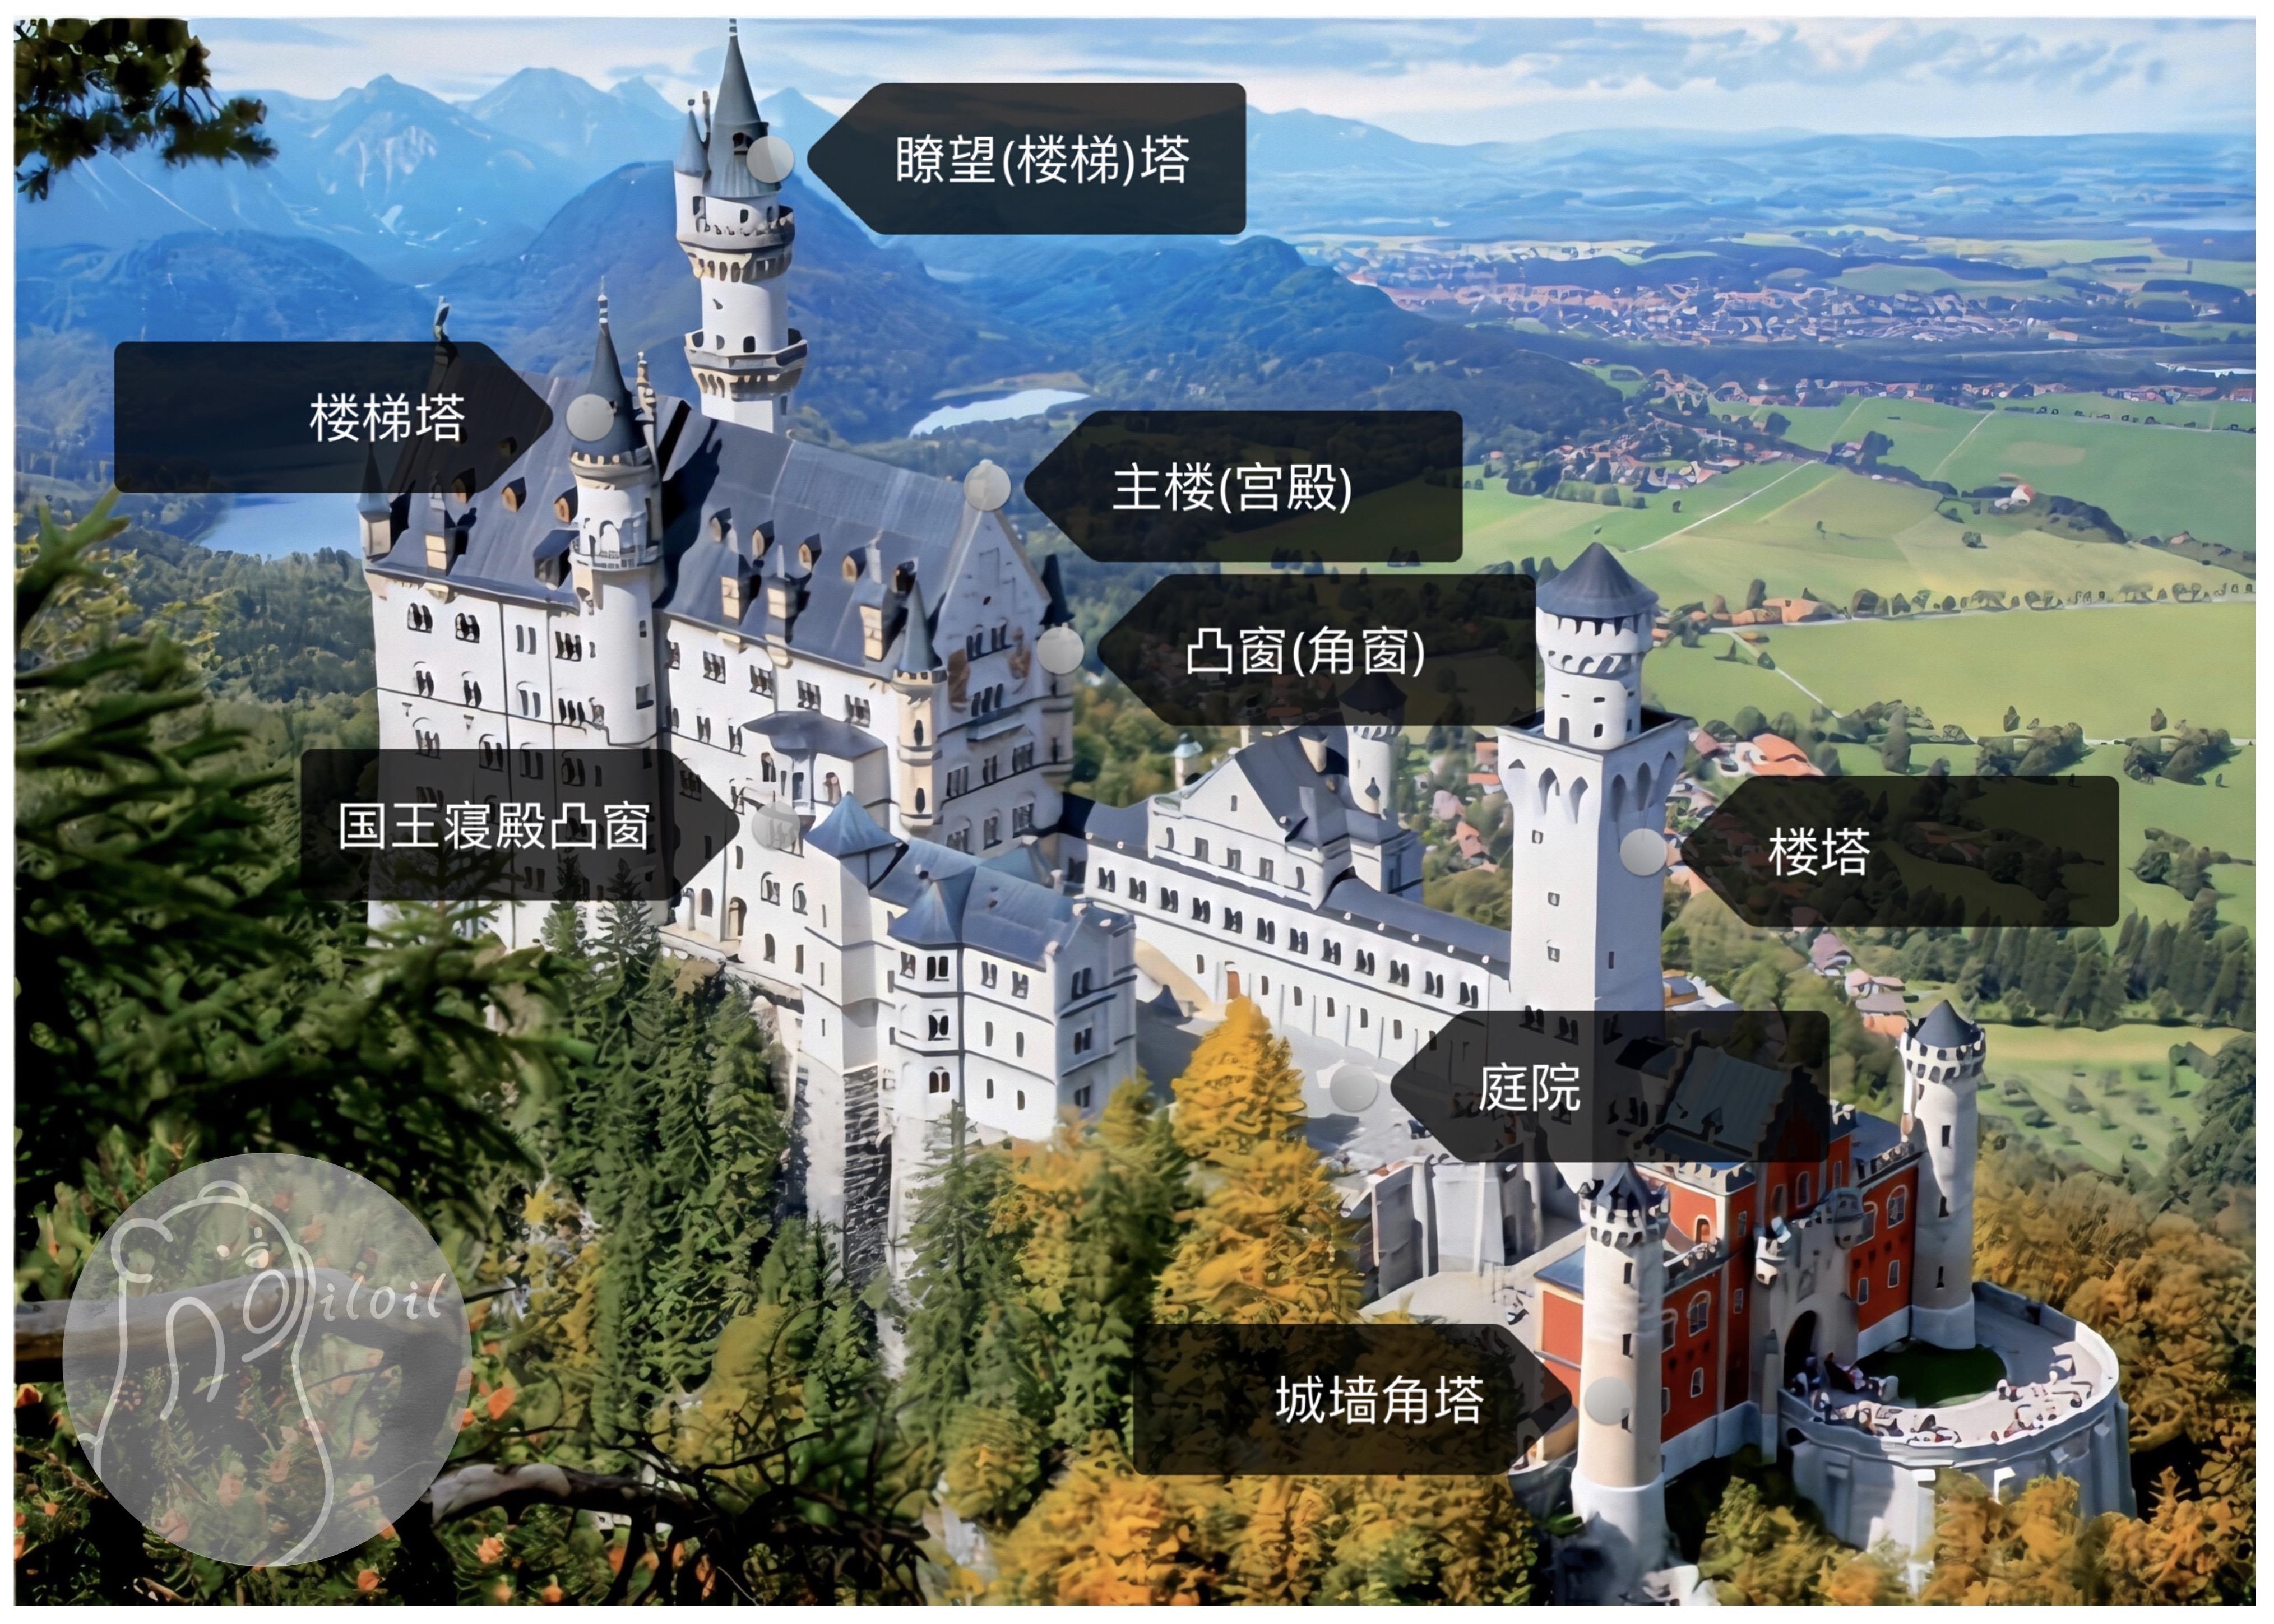 精选《风景德国风景新天鹅城堡雄伟壮观宽屏高清壁纸》图集 - 壁纸网